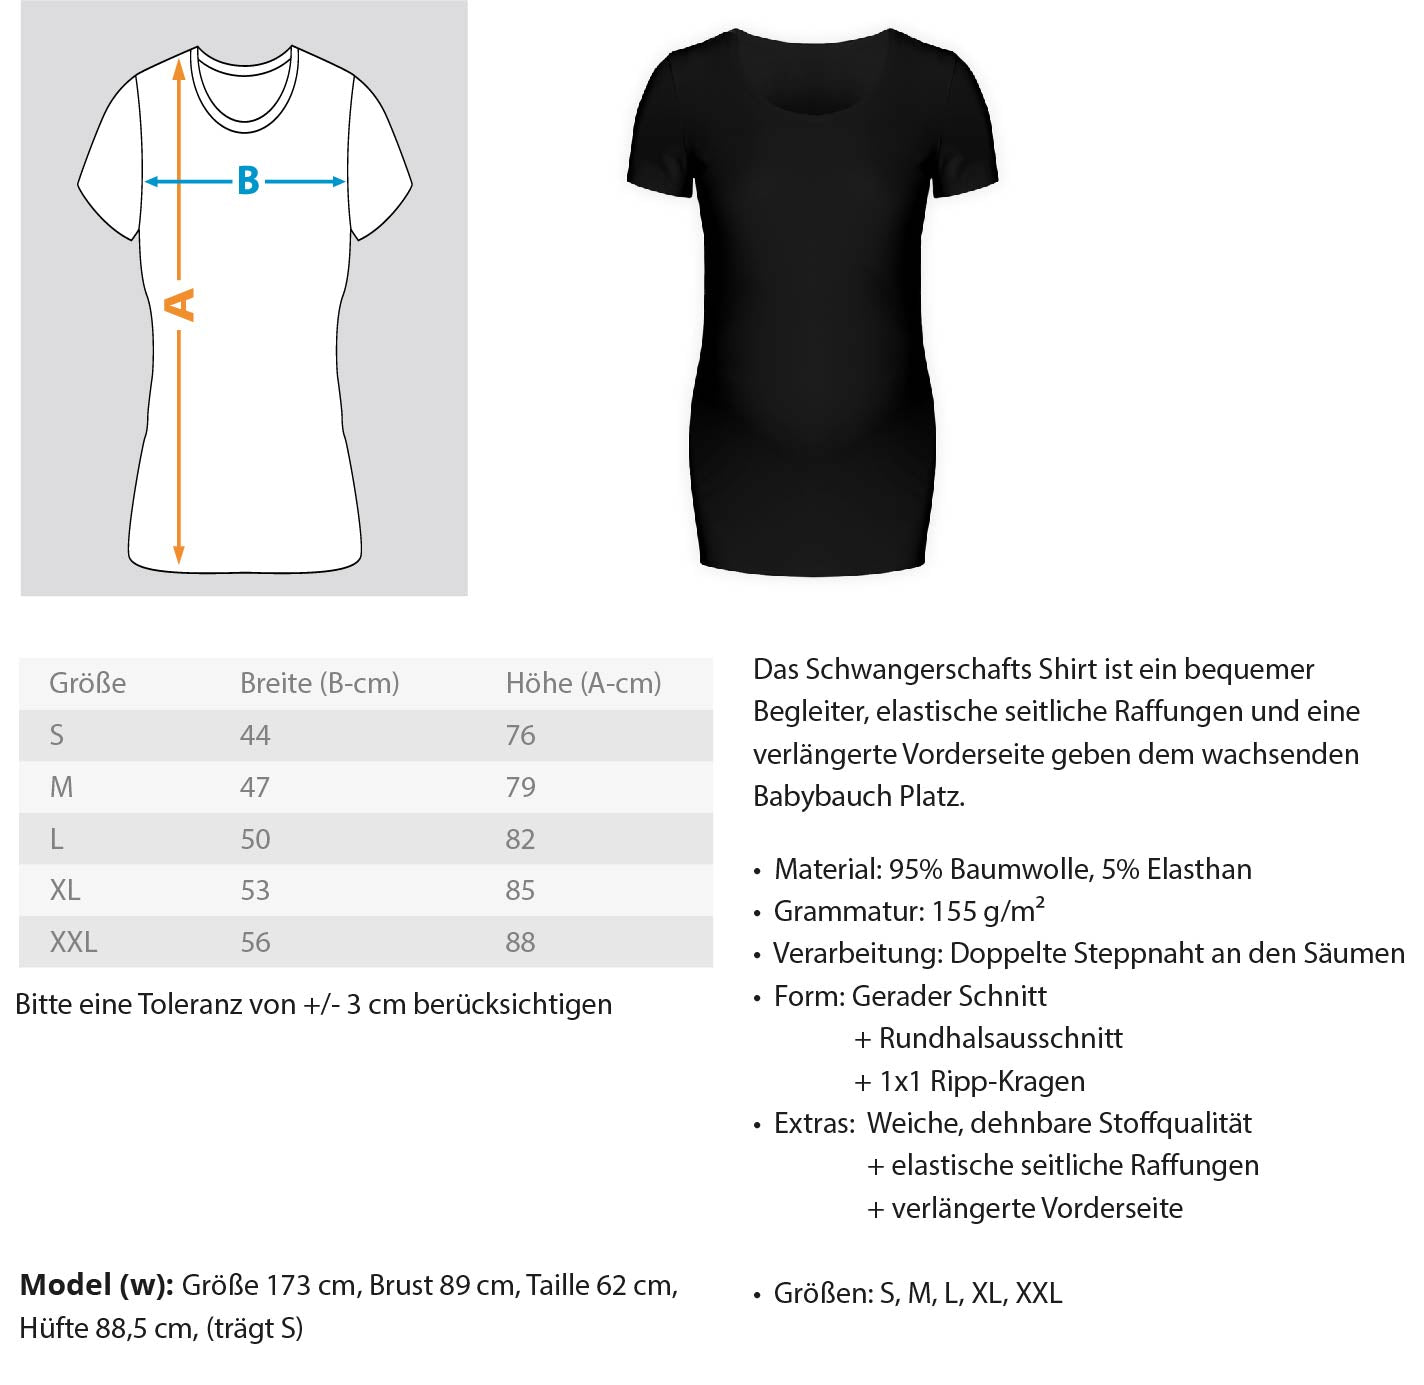 Girl Power  - Schwangerschafts Shirt €29.95 Gerüstbauer - Shop >>